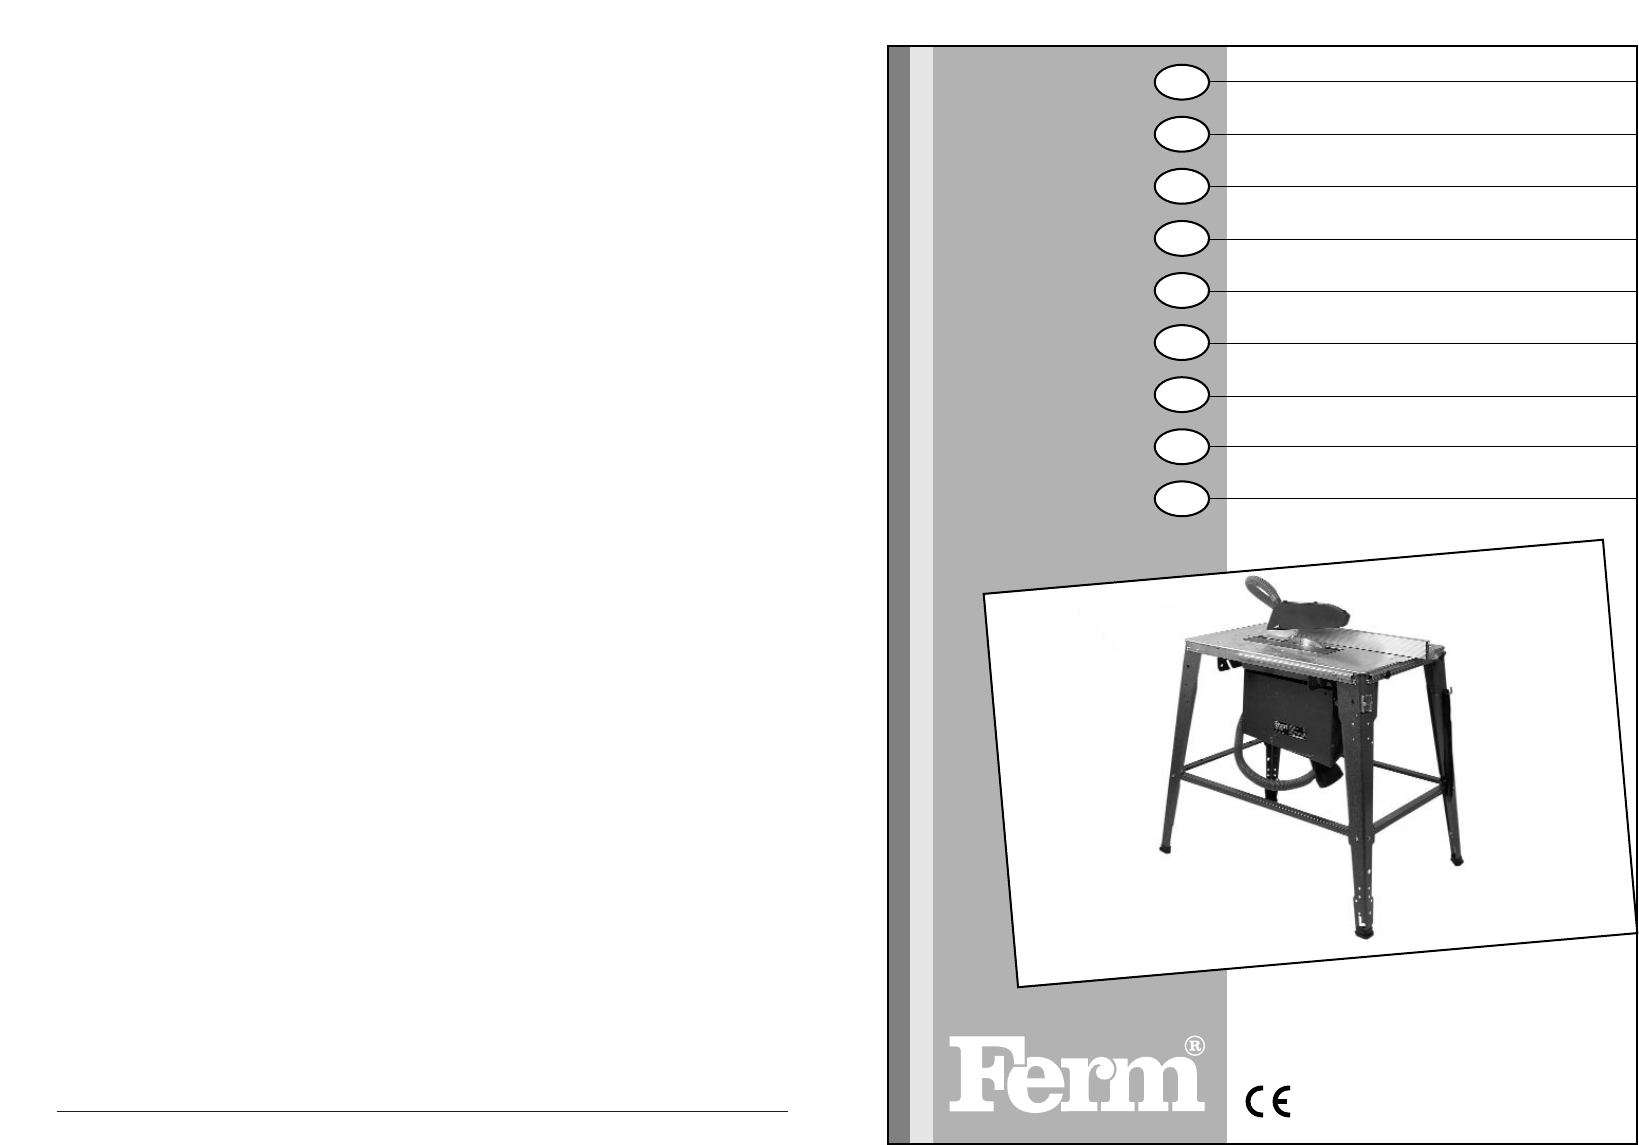 Manual Ferm TSM1003 - FZT-315 (page 1 of 28) (English, German, Dutch, French, Swedish, Finnish)